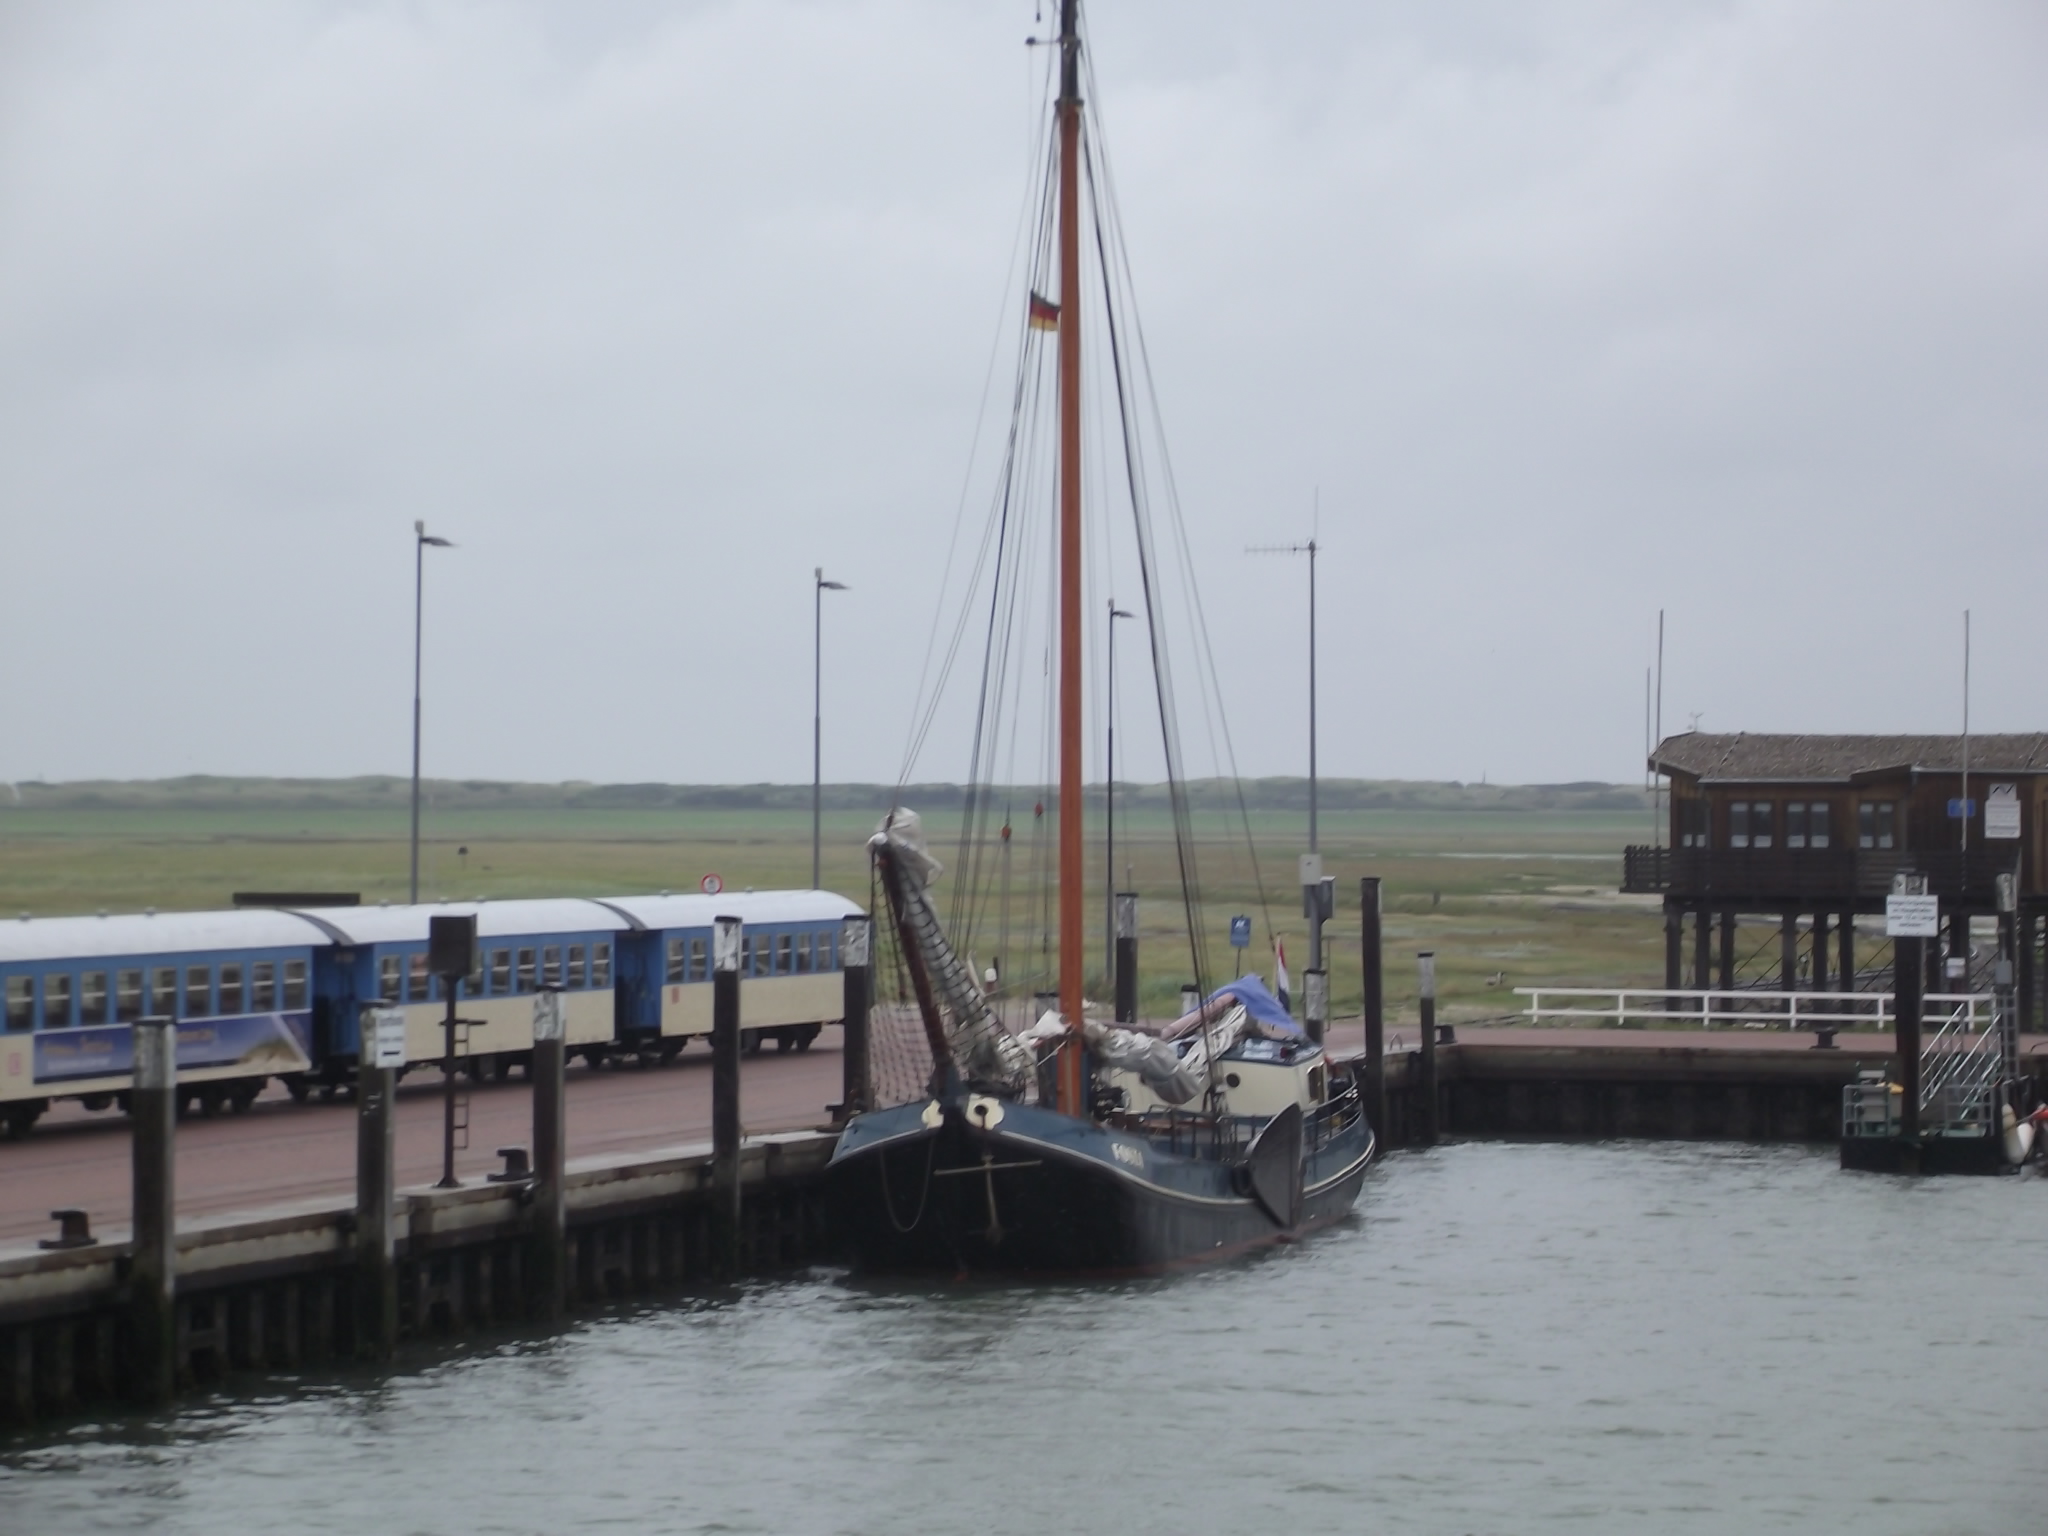 Anleger von Wangerooge - Die Inselbahn steht schon bereit, davor ein holländisches Schiff mit Seitenschwertern